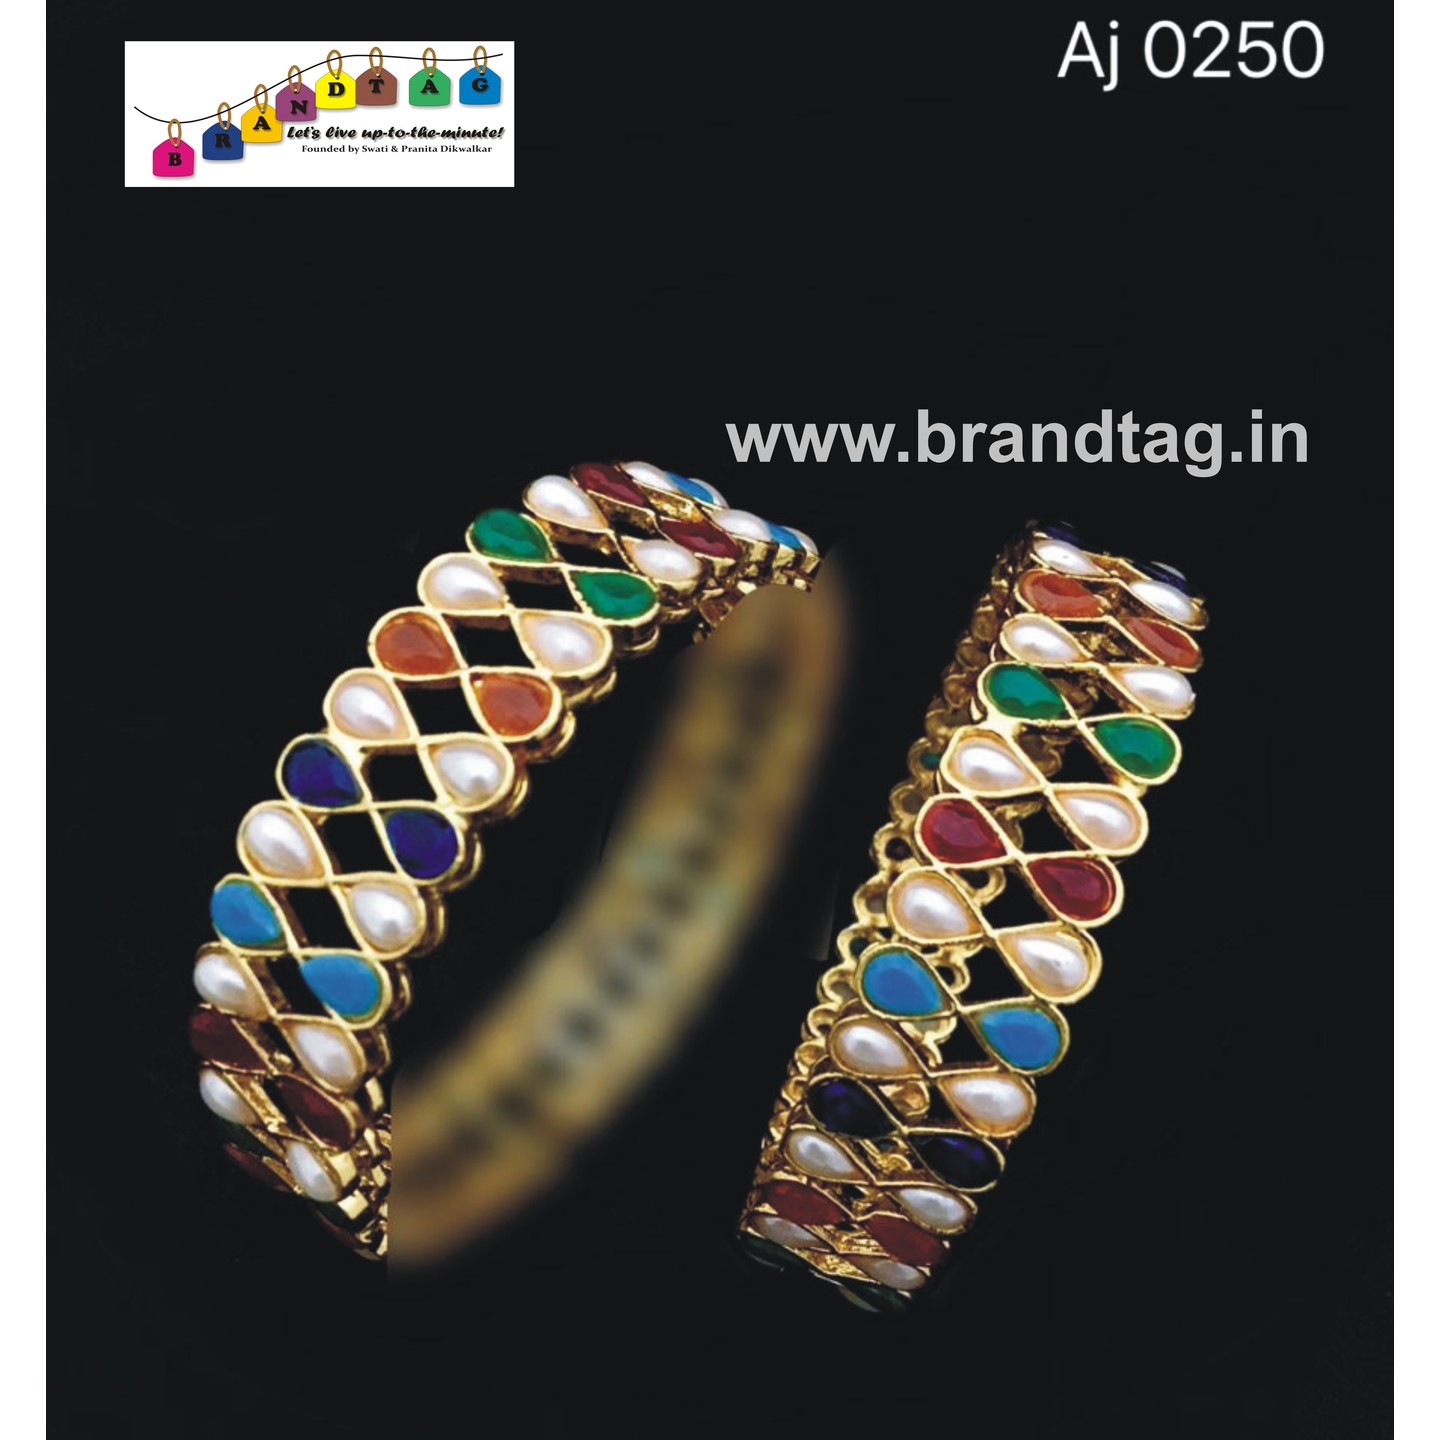 Uniquely designed multi colored bangles!!